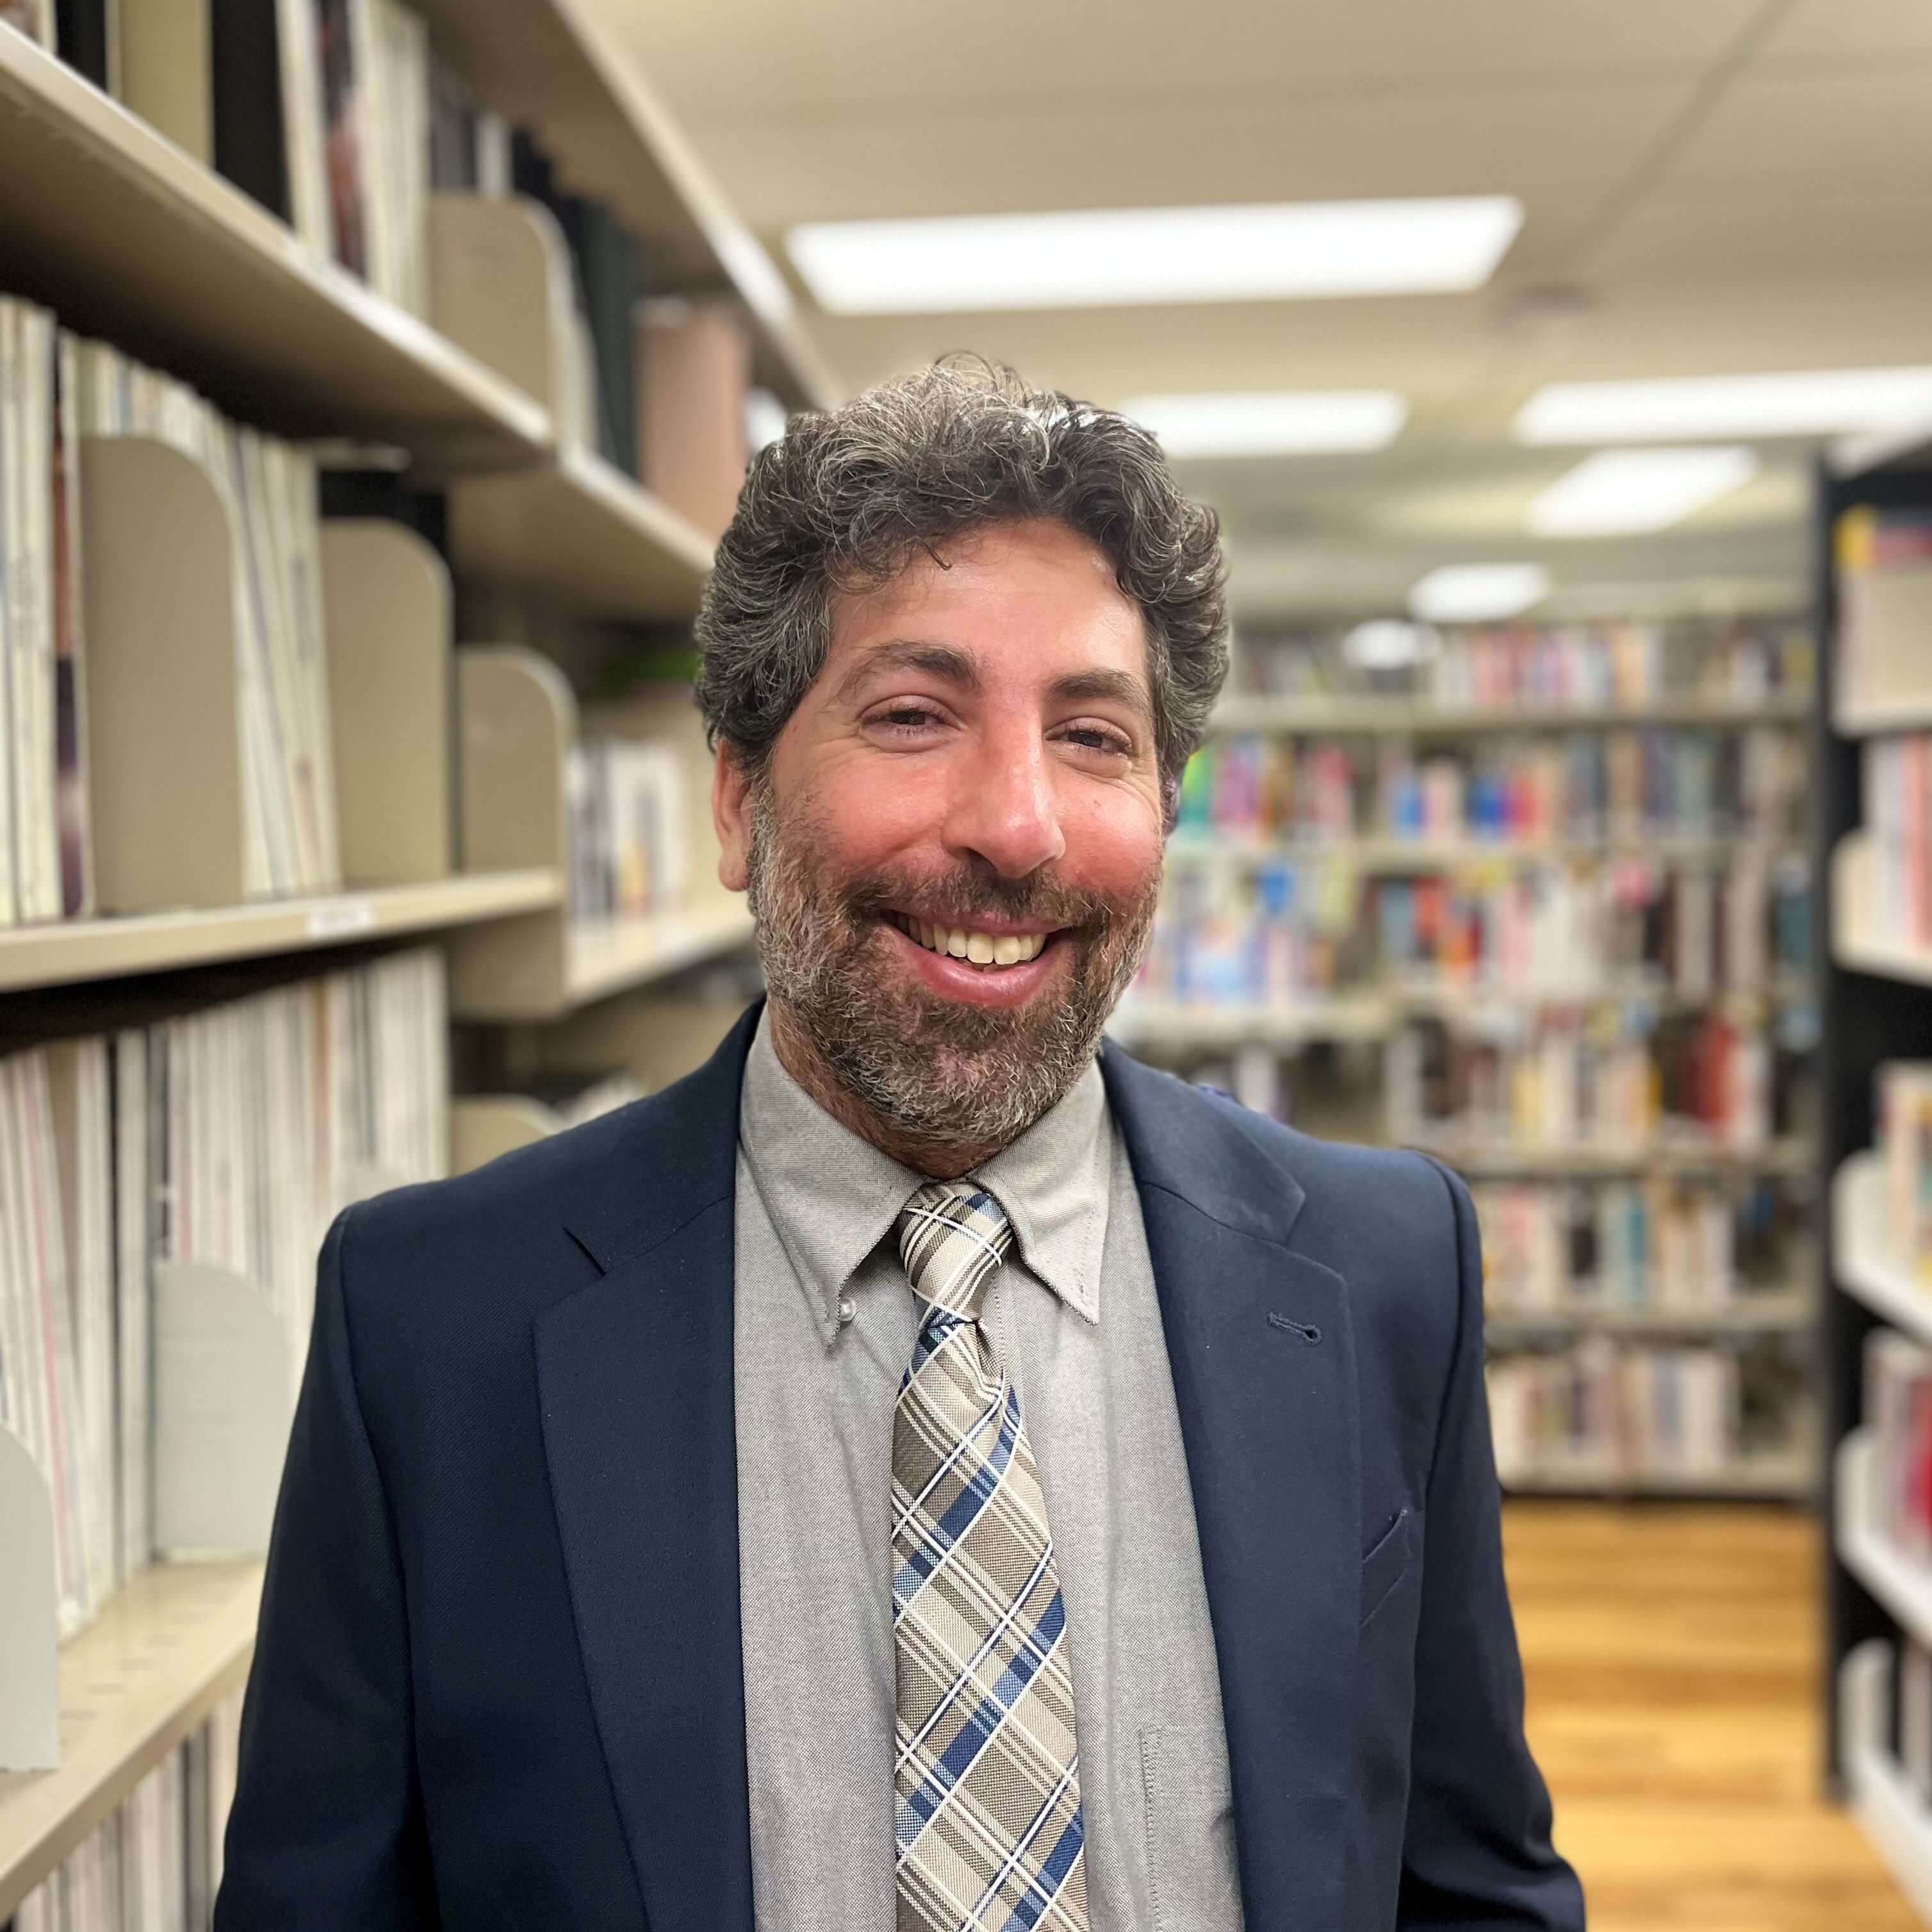 Un homme joyeux aux cheveux gris bouclés, portant un costume bleu, une cravate et une chemise grise, souriant dans un cadre de bibliothèque avec des étagères en arrière-plan.